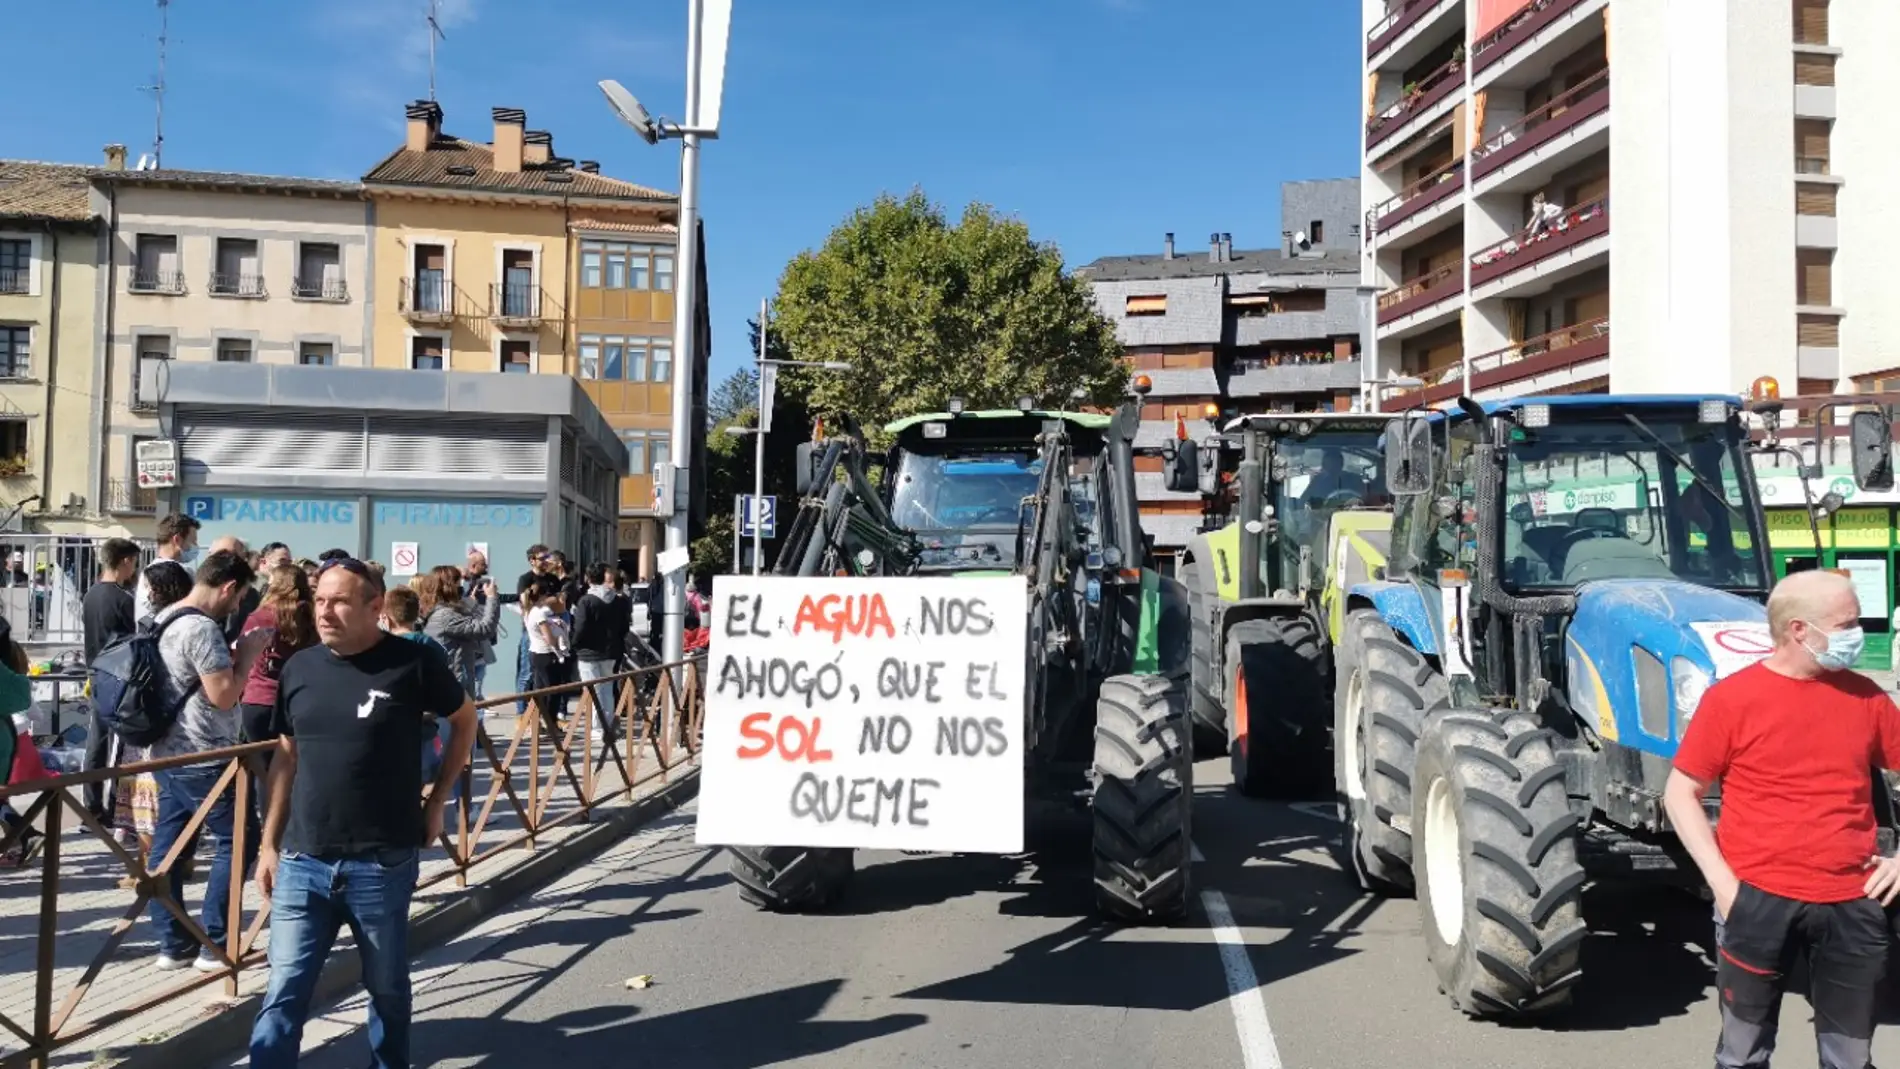 Los tractores tomaron las calles de Jaca el domingo